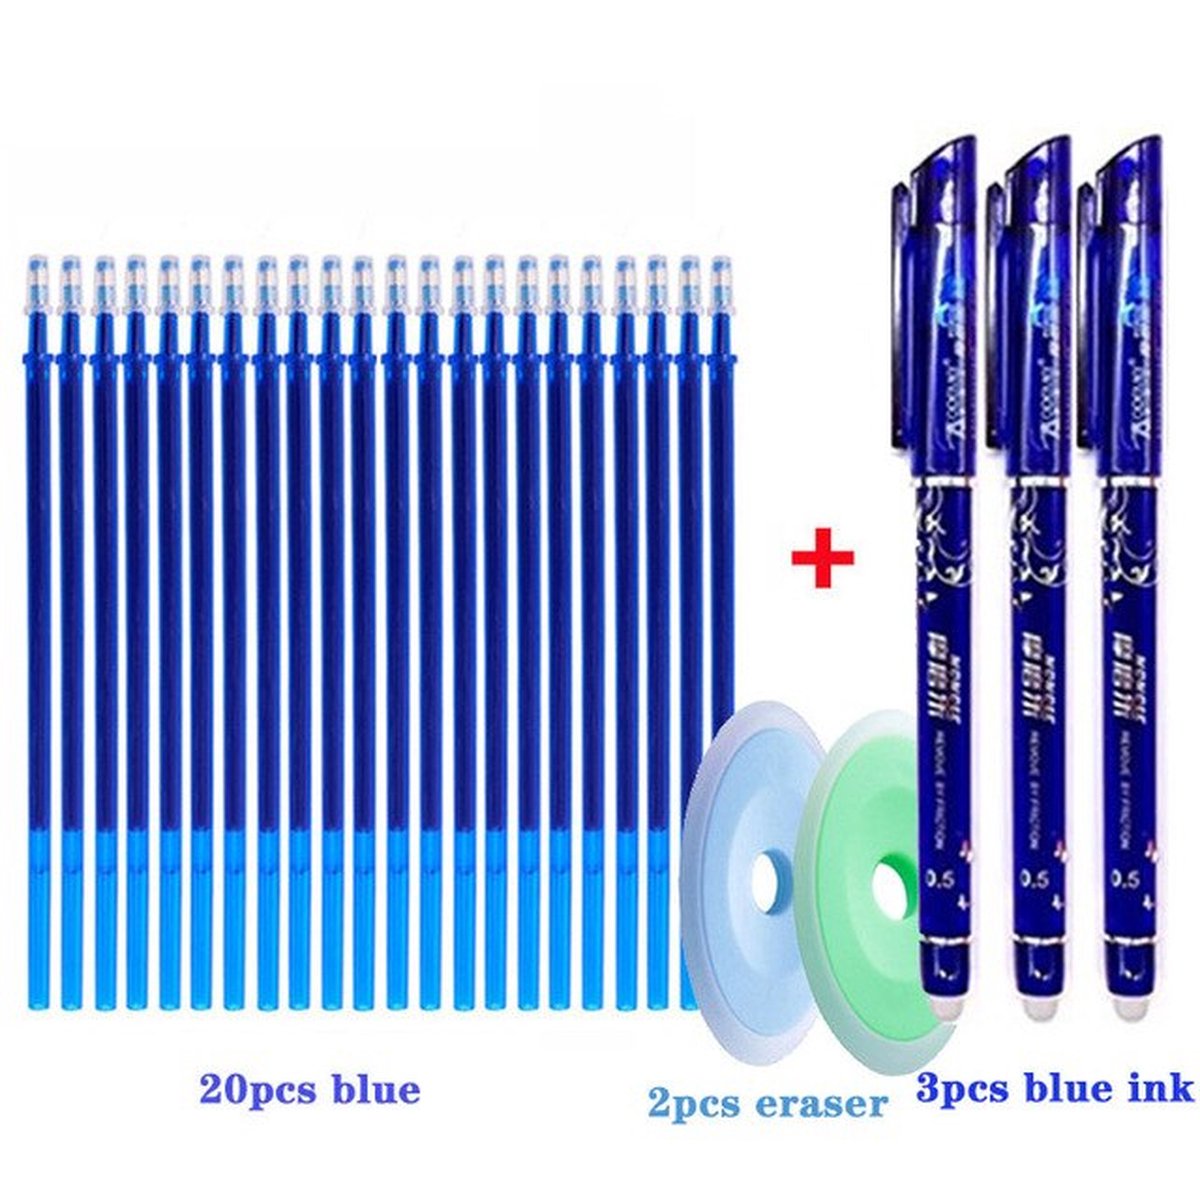 Uitwisbare pennen- 3 stuks-  Inclusief 22 refill- Uitwisbare pen- Erasable pen- Uitwisbaar- Uitgumbaar- Navul inkt- Rollerball pen- Gumbaar- Wisbaar- Uitwisbare inkt - shopgoed